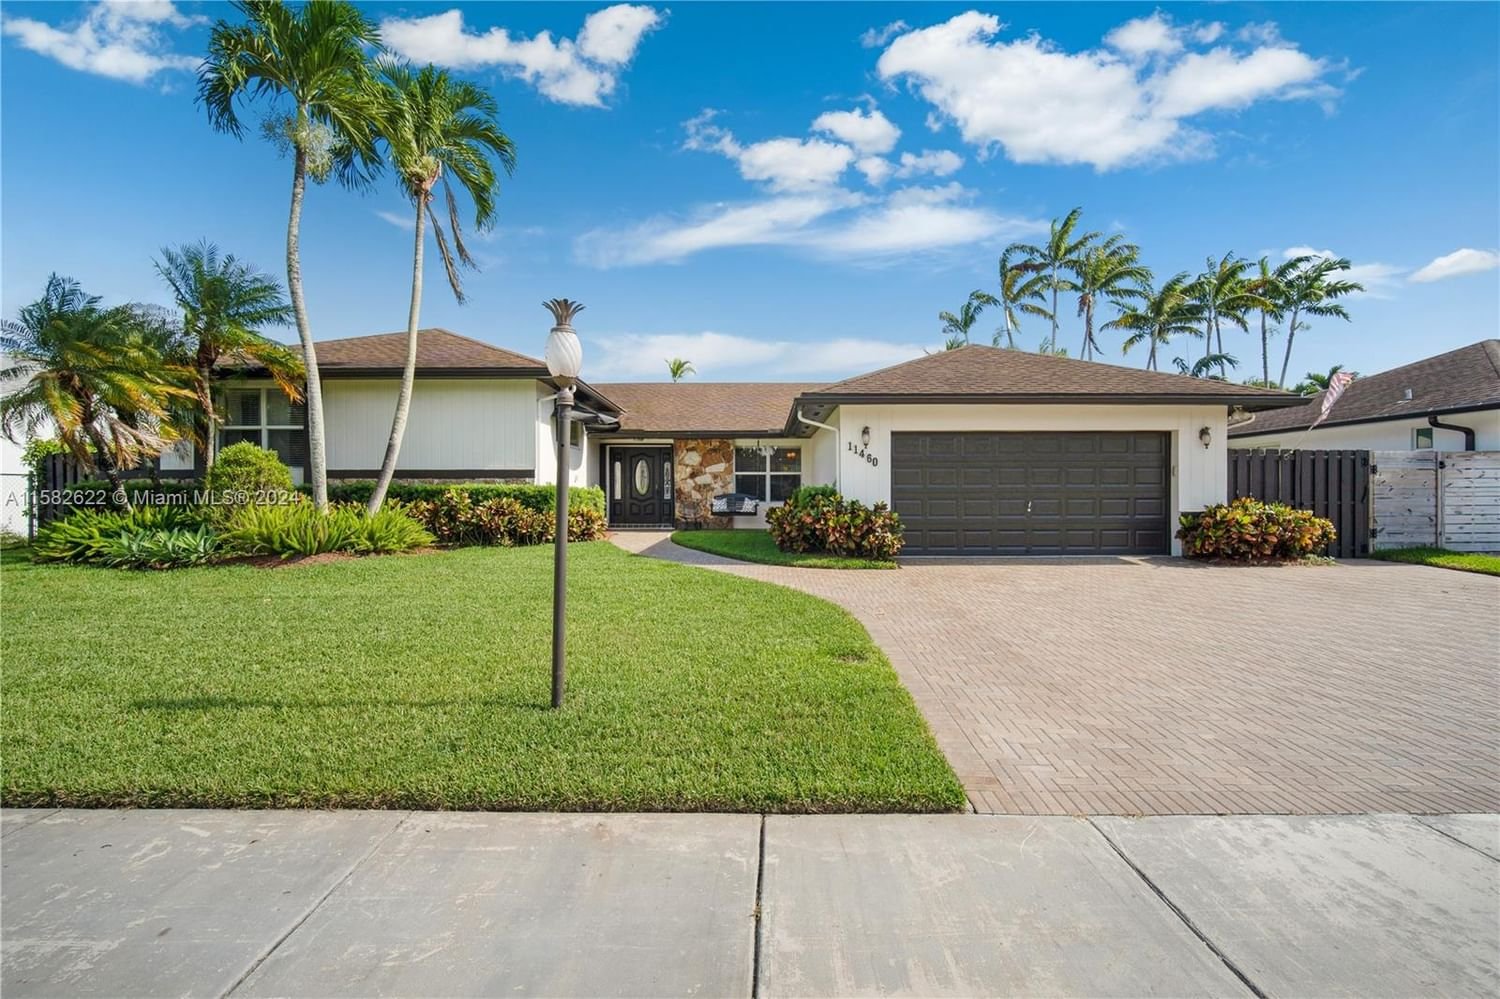 Real estate property located at 11460 99th Ter, Miami-Dade County, GLEN COVE SEC 2, Miami, FL